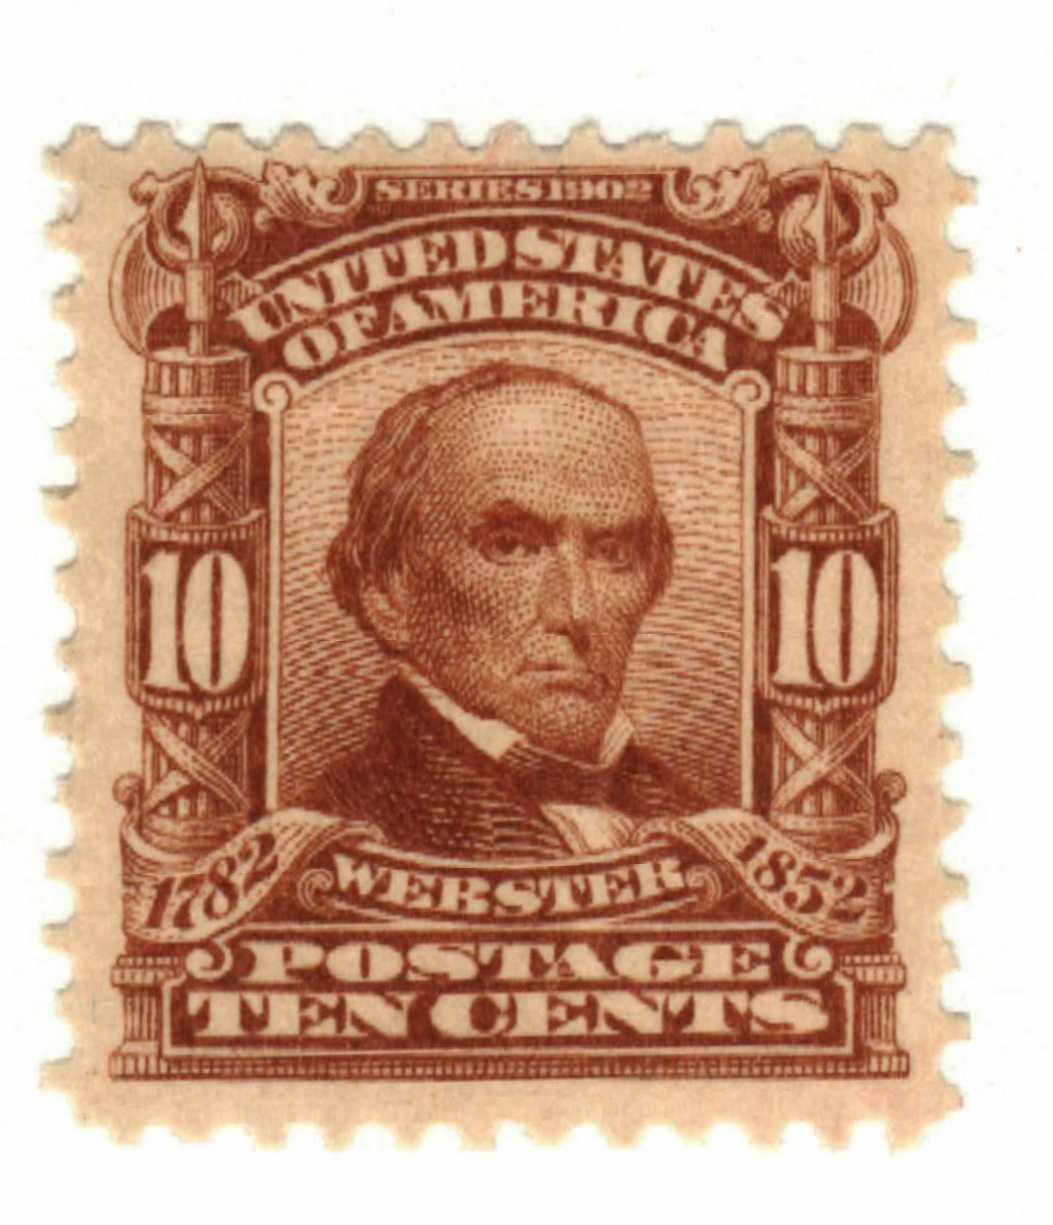 1903 Webster stamp